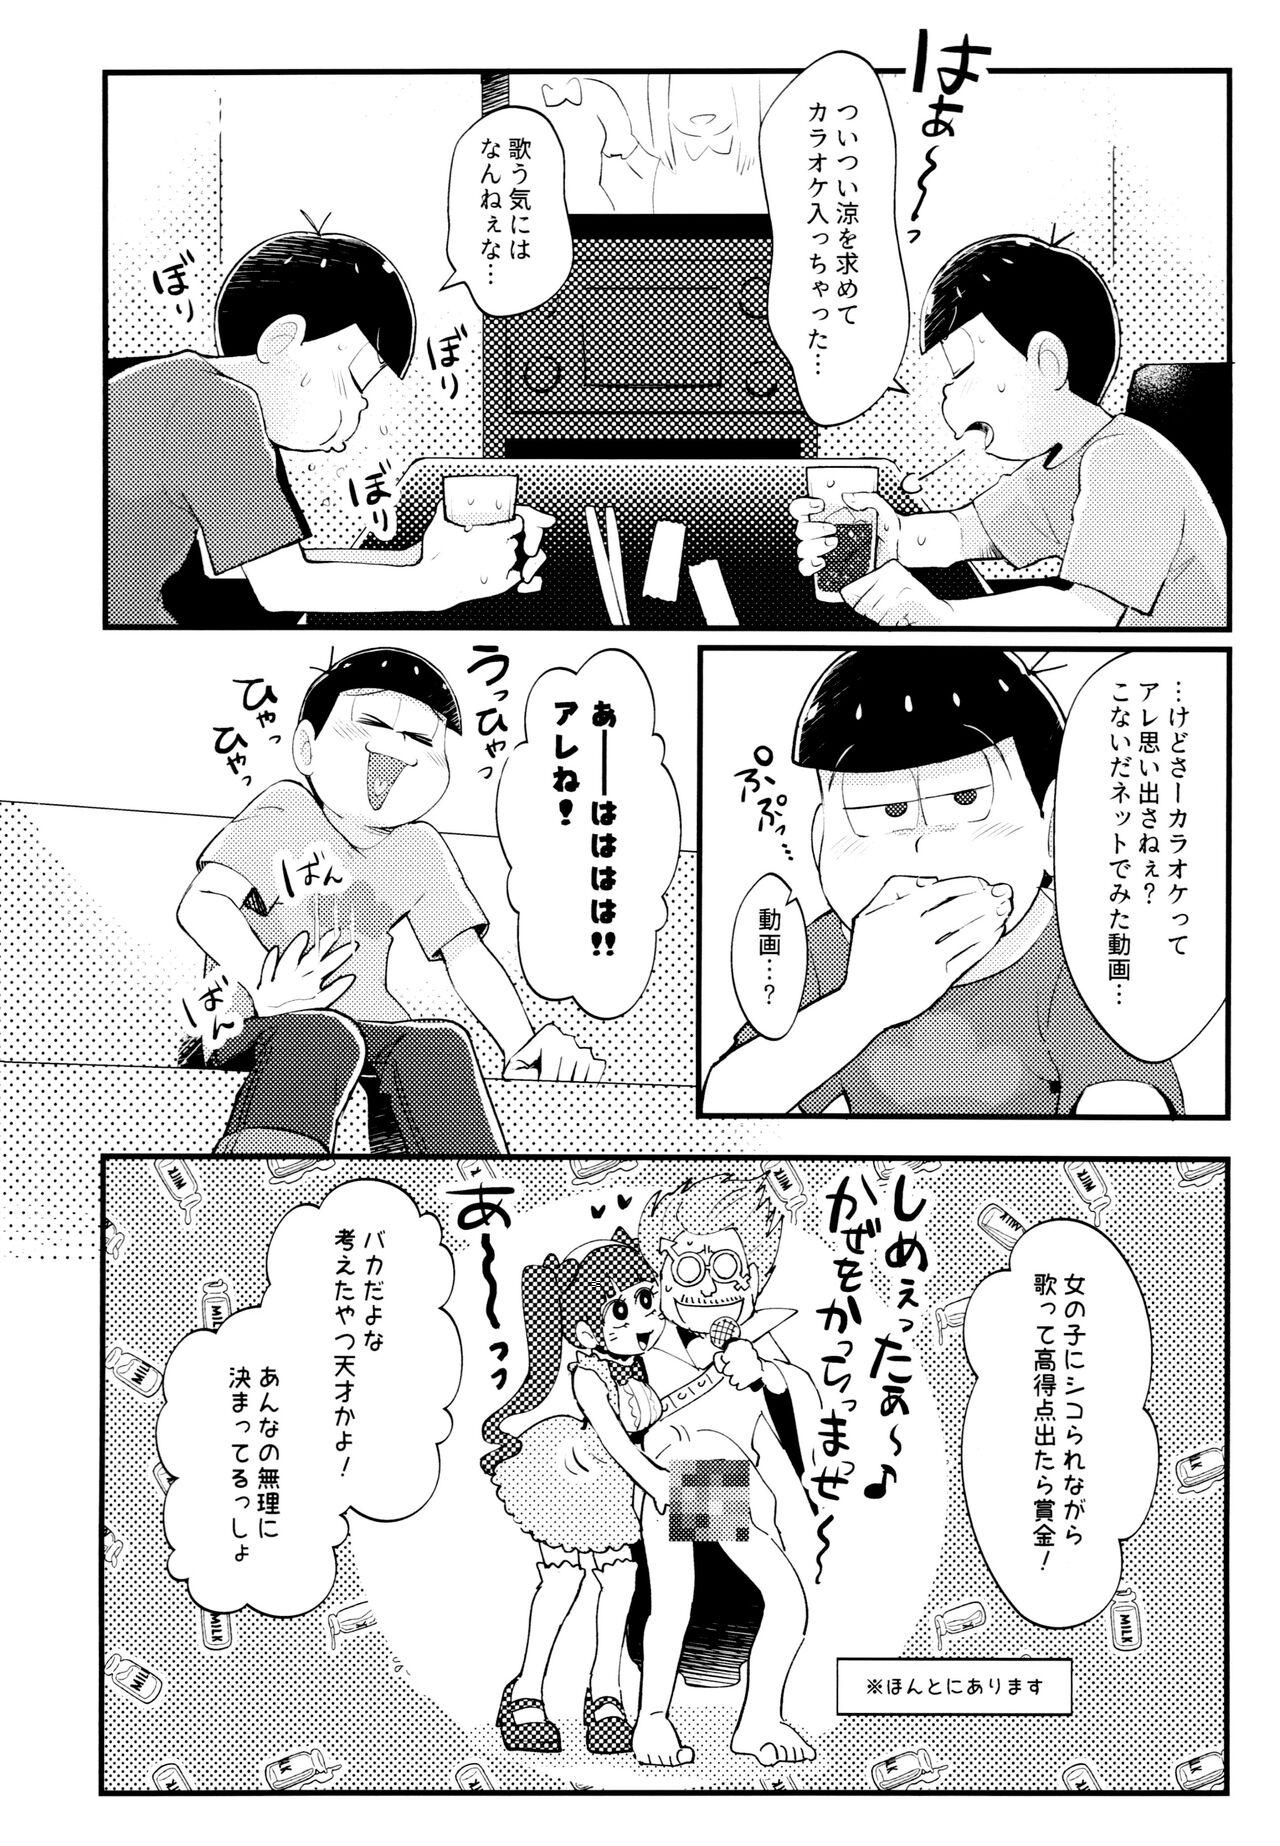 Forwomen Manatsu no!! Shikoshikokaraoke dai batoru!! - Osomatsu san Crossdresser - Page 5